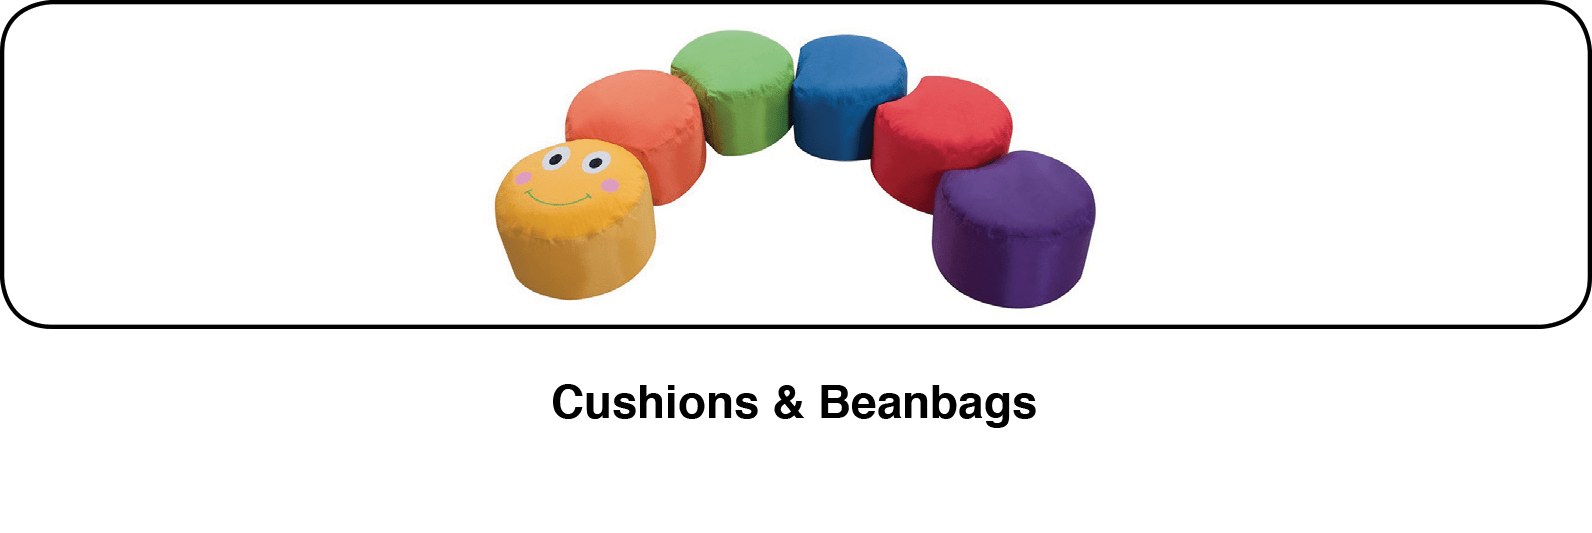 Cushions & Beanbags